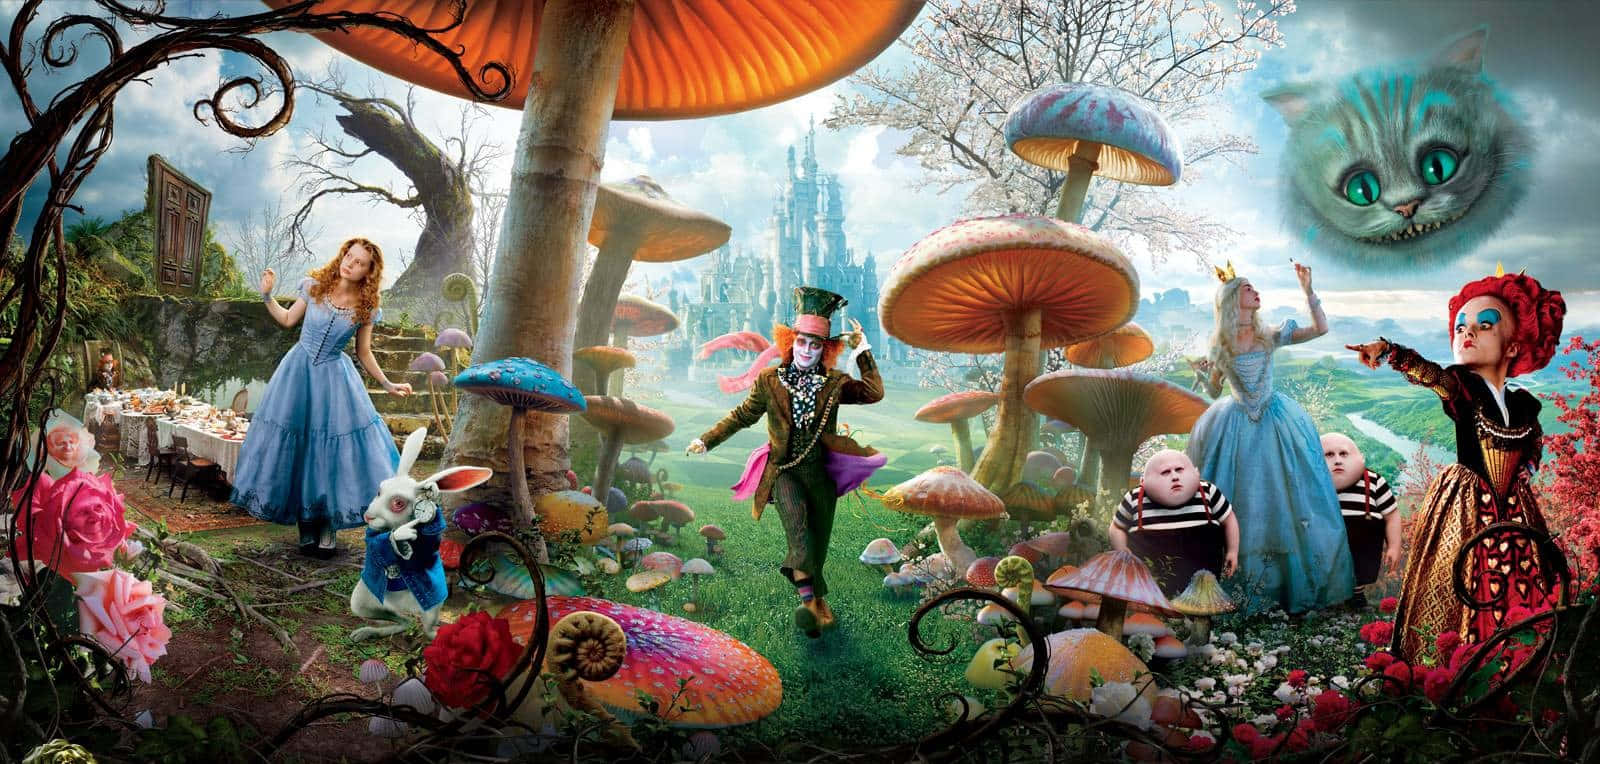 Alicebetritt Die Magische Welt Von Wonderland.